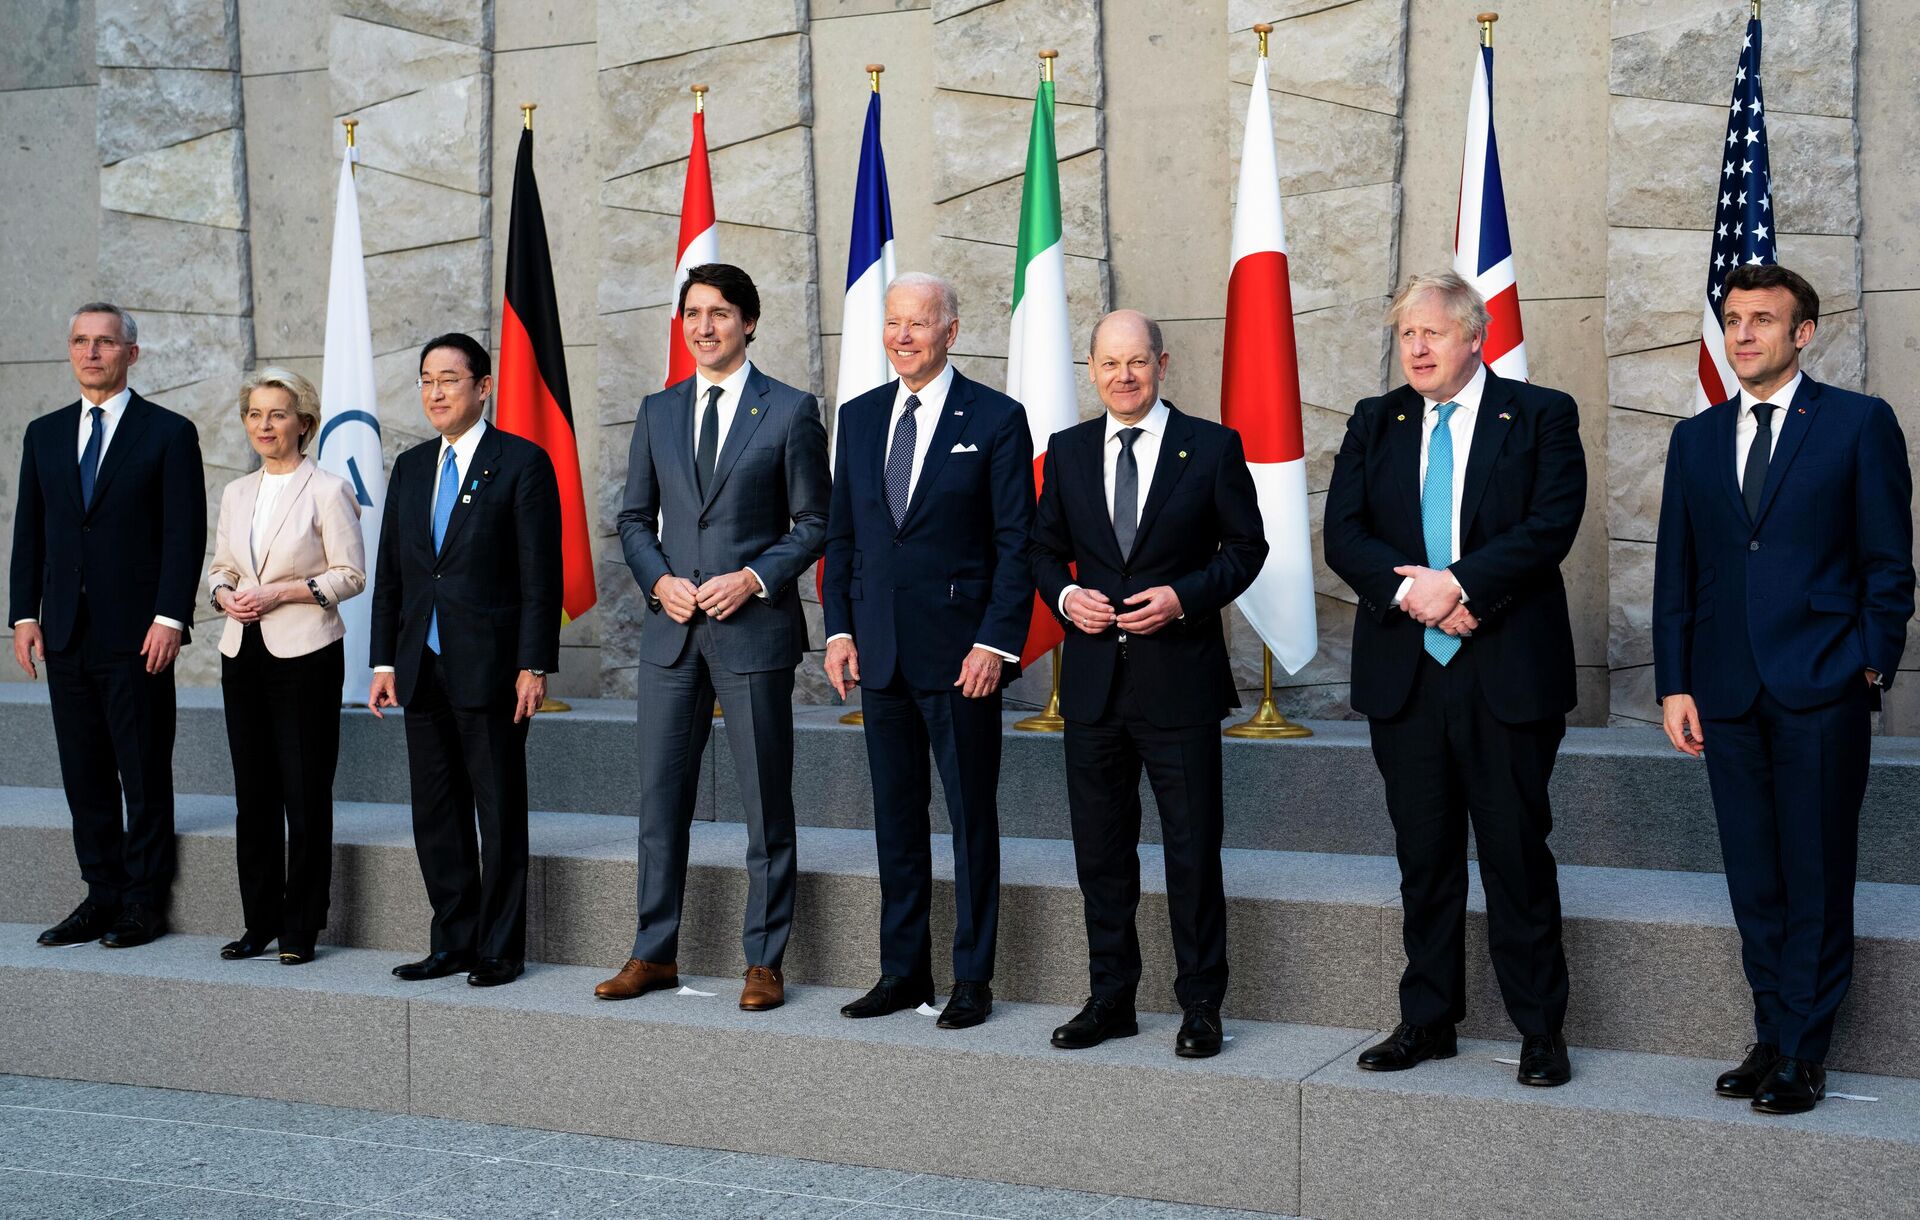 Da esquerda para a direita: o secretário-geral da OTAN, Jens Stoltenberg; a presidente da Comissão Europeia, Ursula von der Leyen; o primeiro-ministro do Japão, Fumio Kishida; o primeiro-ministro do Canadá, Justin Trudeau; o presidente dos EUA, Joe Biden; o chanceler da Alemanha, Olaf Scholz; o primeiro-ministro britânico, Boris Johnson; e o presidente da França, Emmanuel Macron. Os representantes posam para uma foto de grupo dos líderes do G7 durante cúpula da OTAN, em Bruxelas, Bélgica, 24 de março de 2022 - Sputnik Brasil, 1920, 29.06.2022